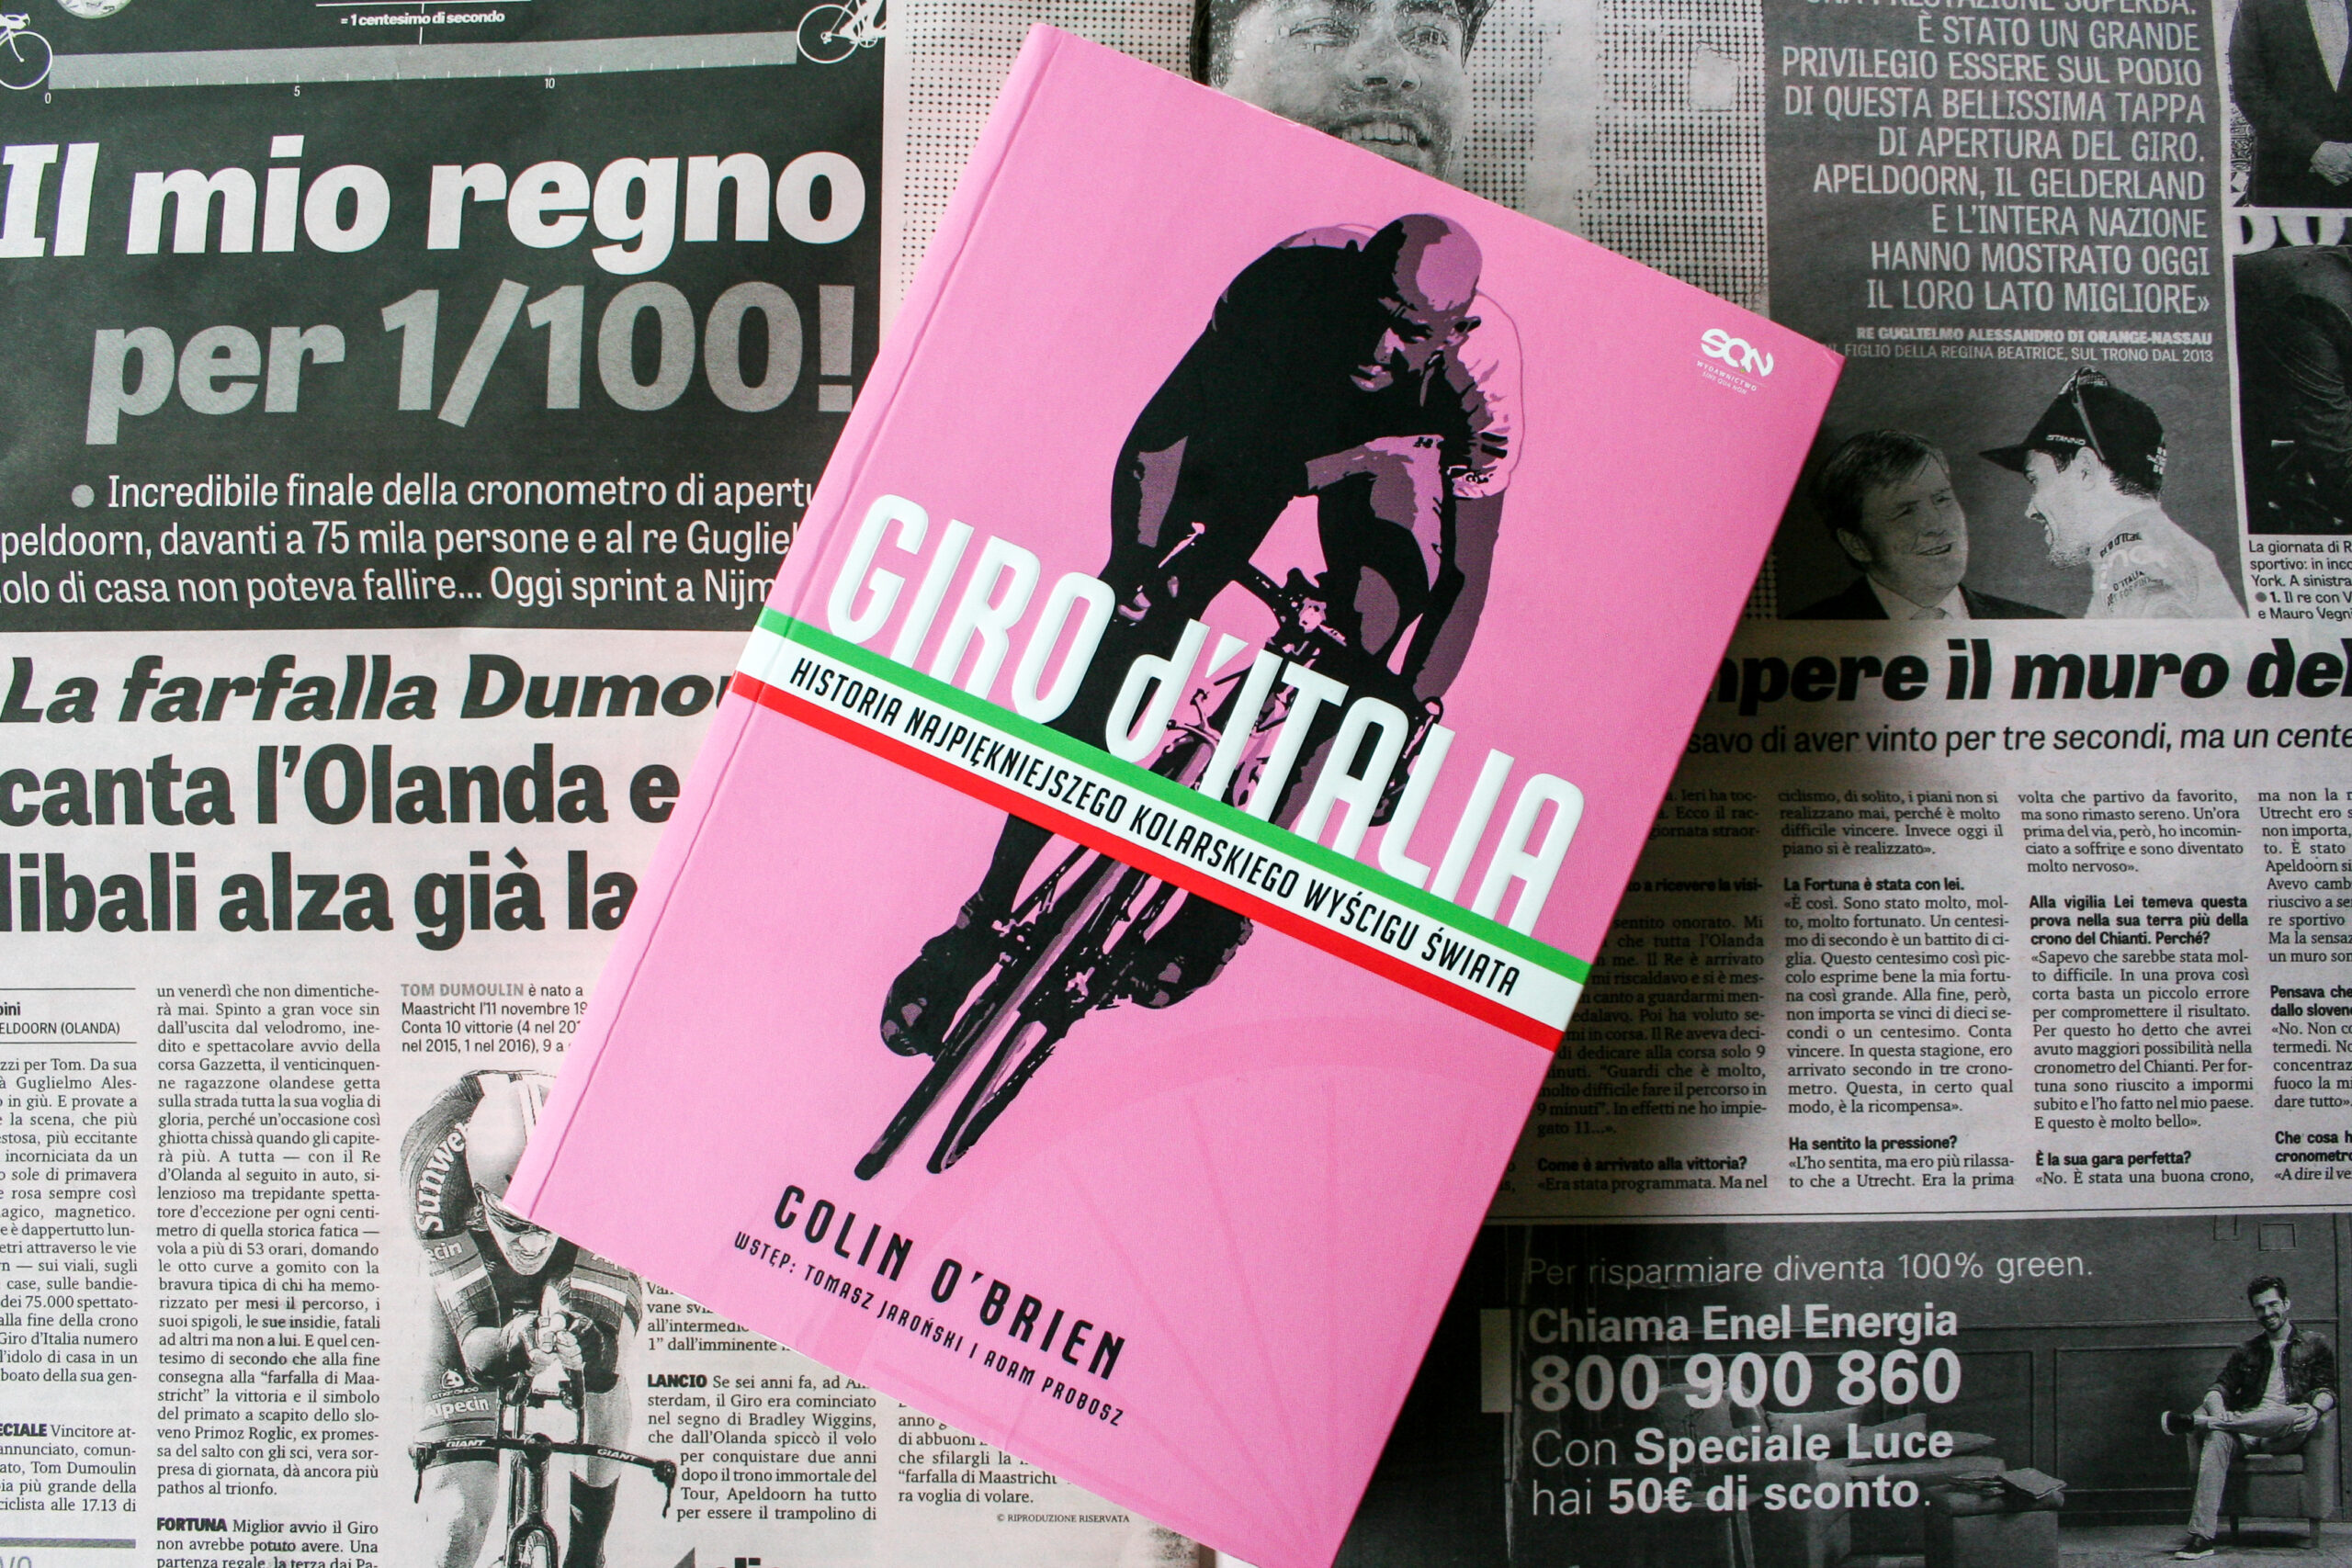 Rozwiązanie konkursu “Giro d’Italia”